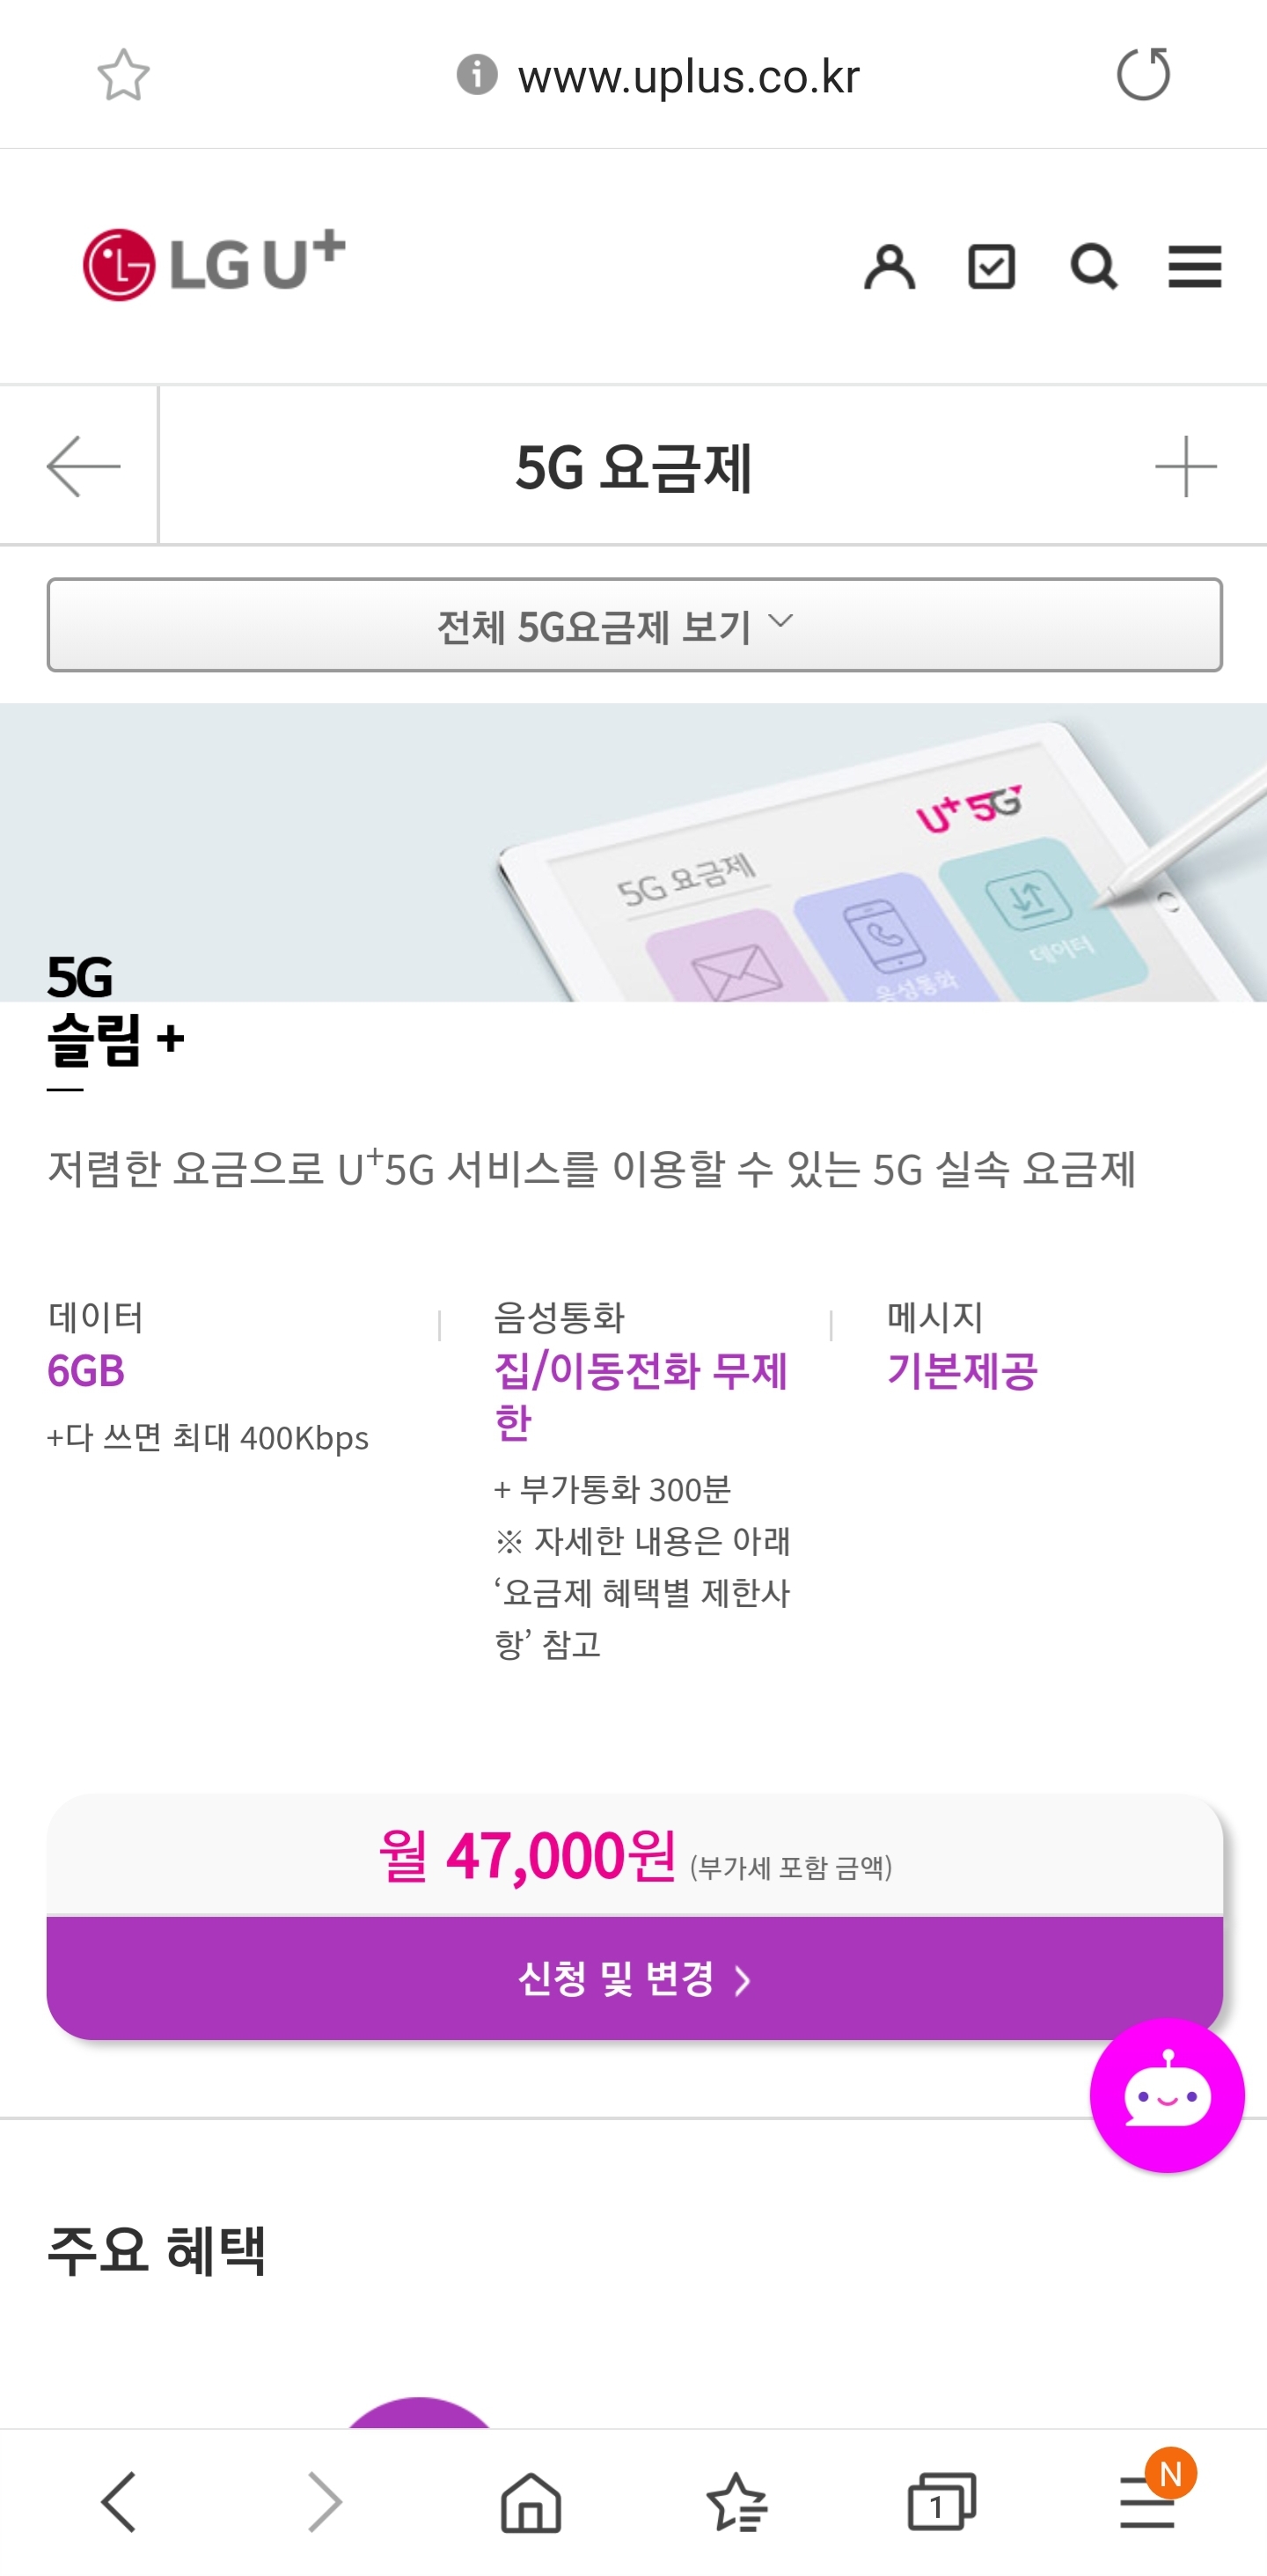 LG 유플러스 5G 요금제 신설정보 - 휴대폰정보 - 알고사